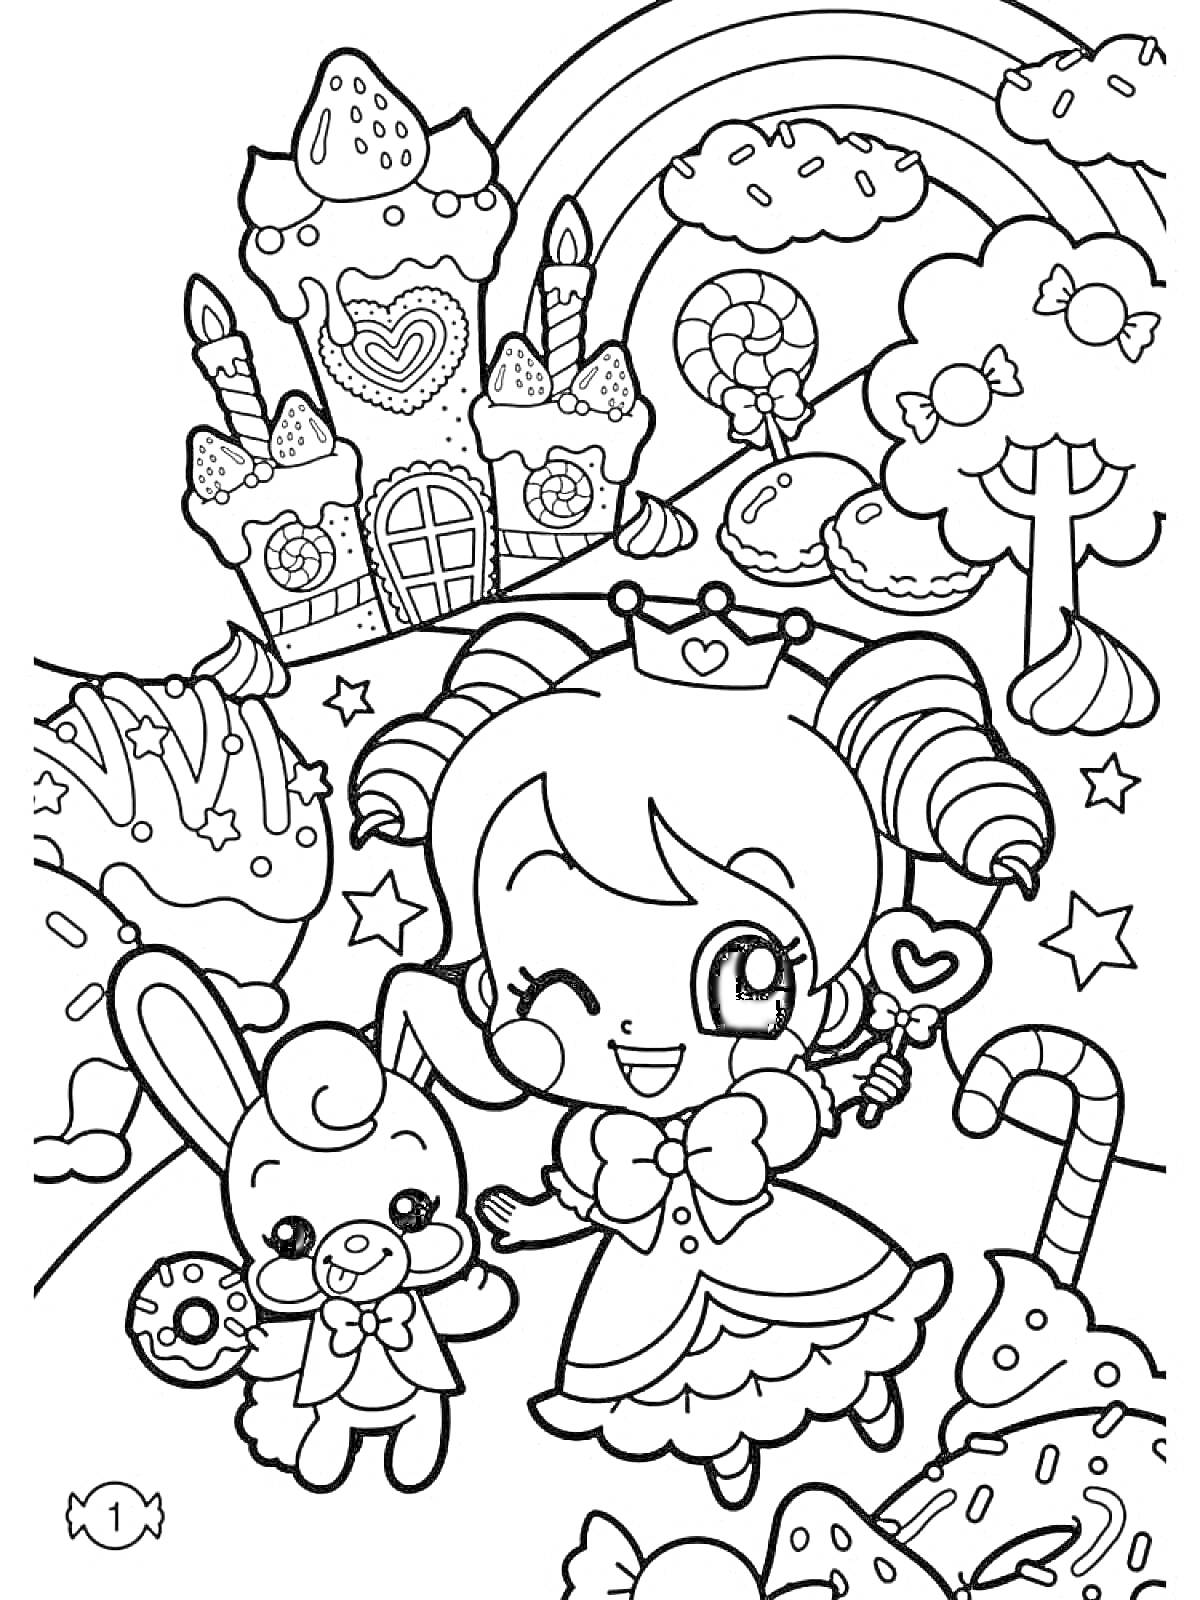 Раскраска Девочка с кроликом на фоне замка, радуги, облаков, конфетного дерева, звезд, леденцов и конфет